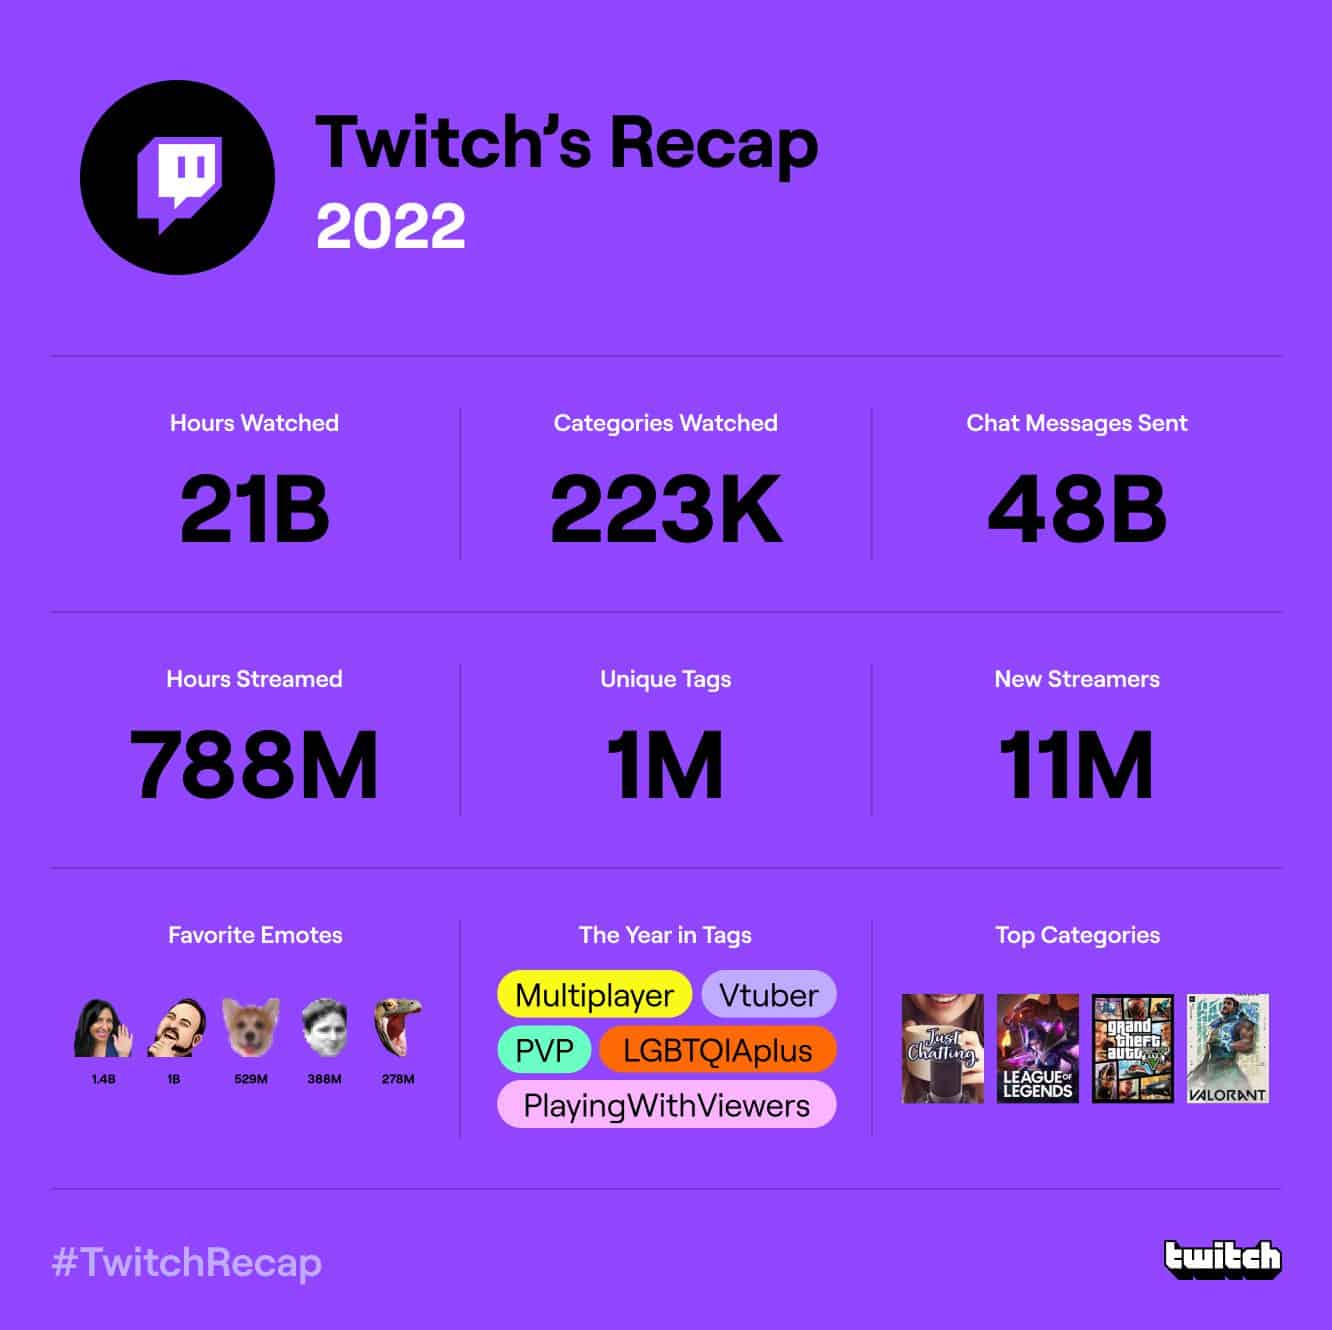 Twitch's Recap 2022